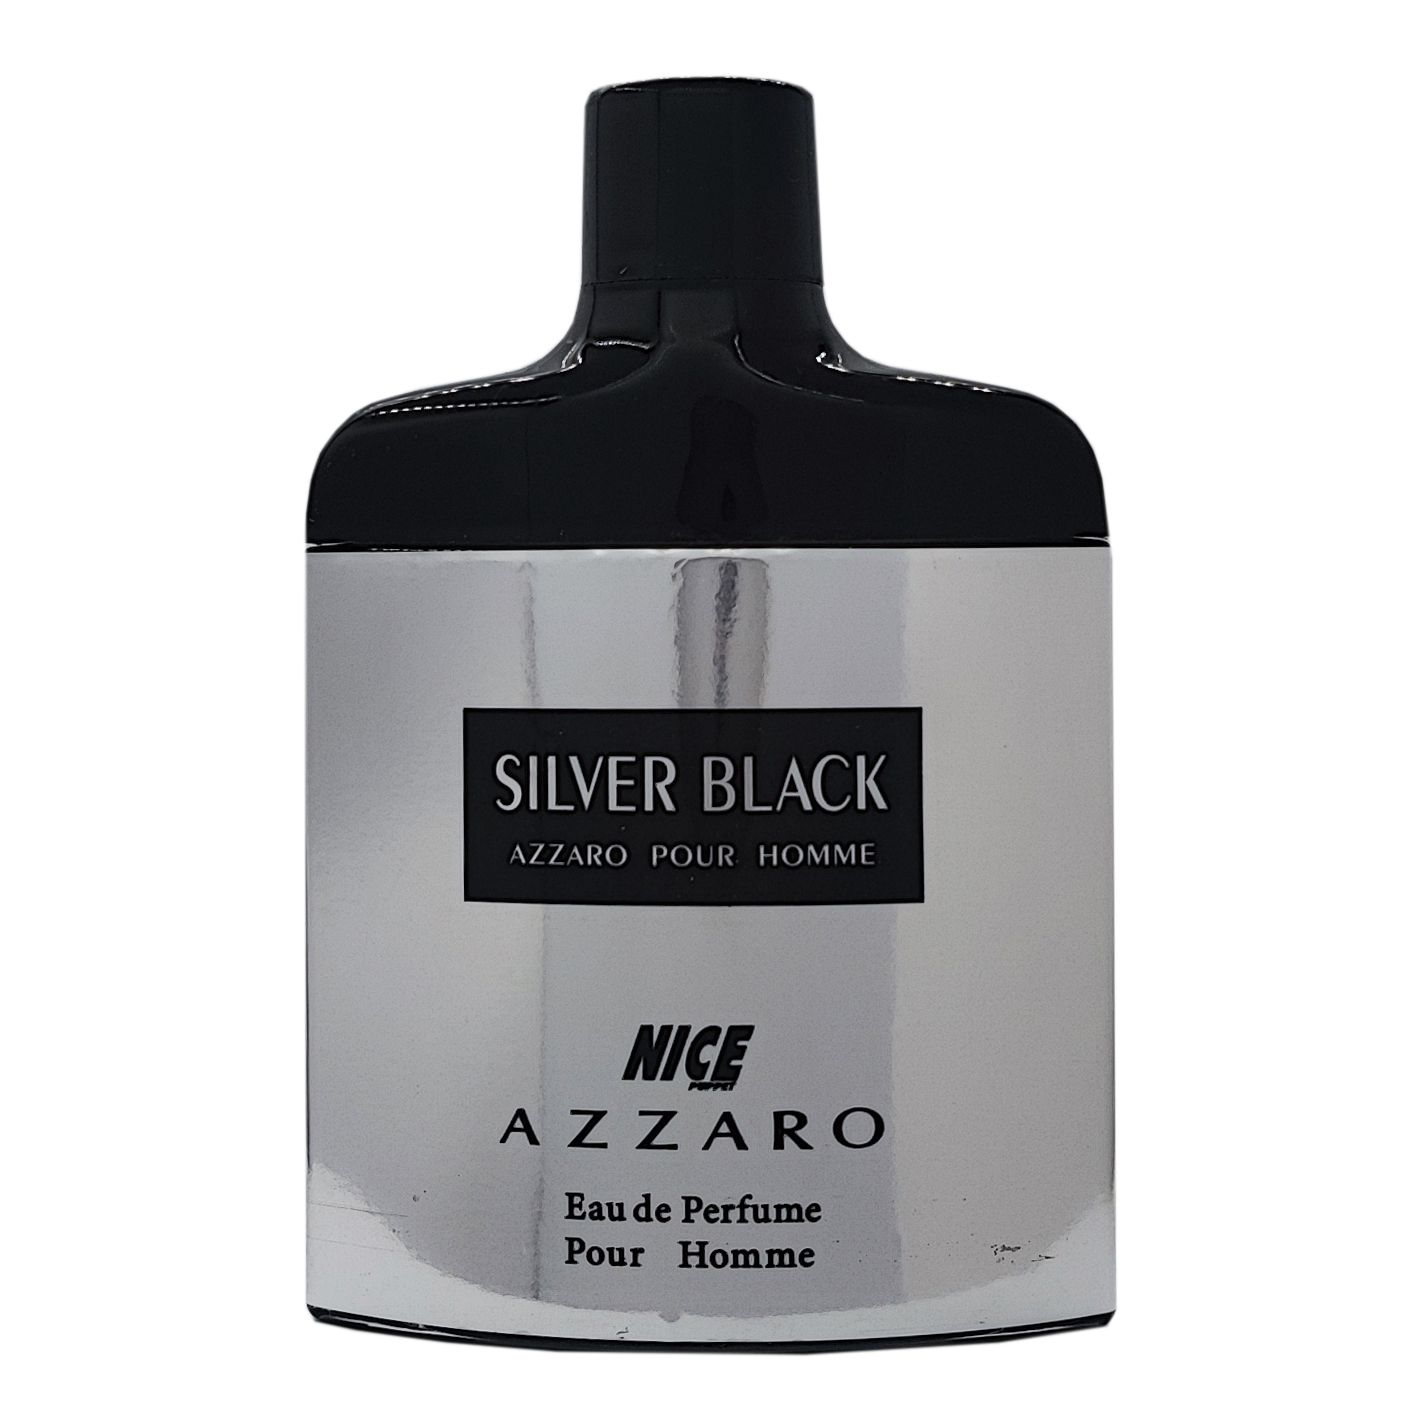 ادوپرفیوم مردانه نایس پاپت مدل azzaro silver black حجم 85 میلی لیتر -  - 2